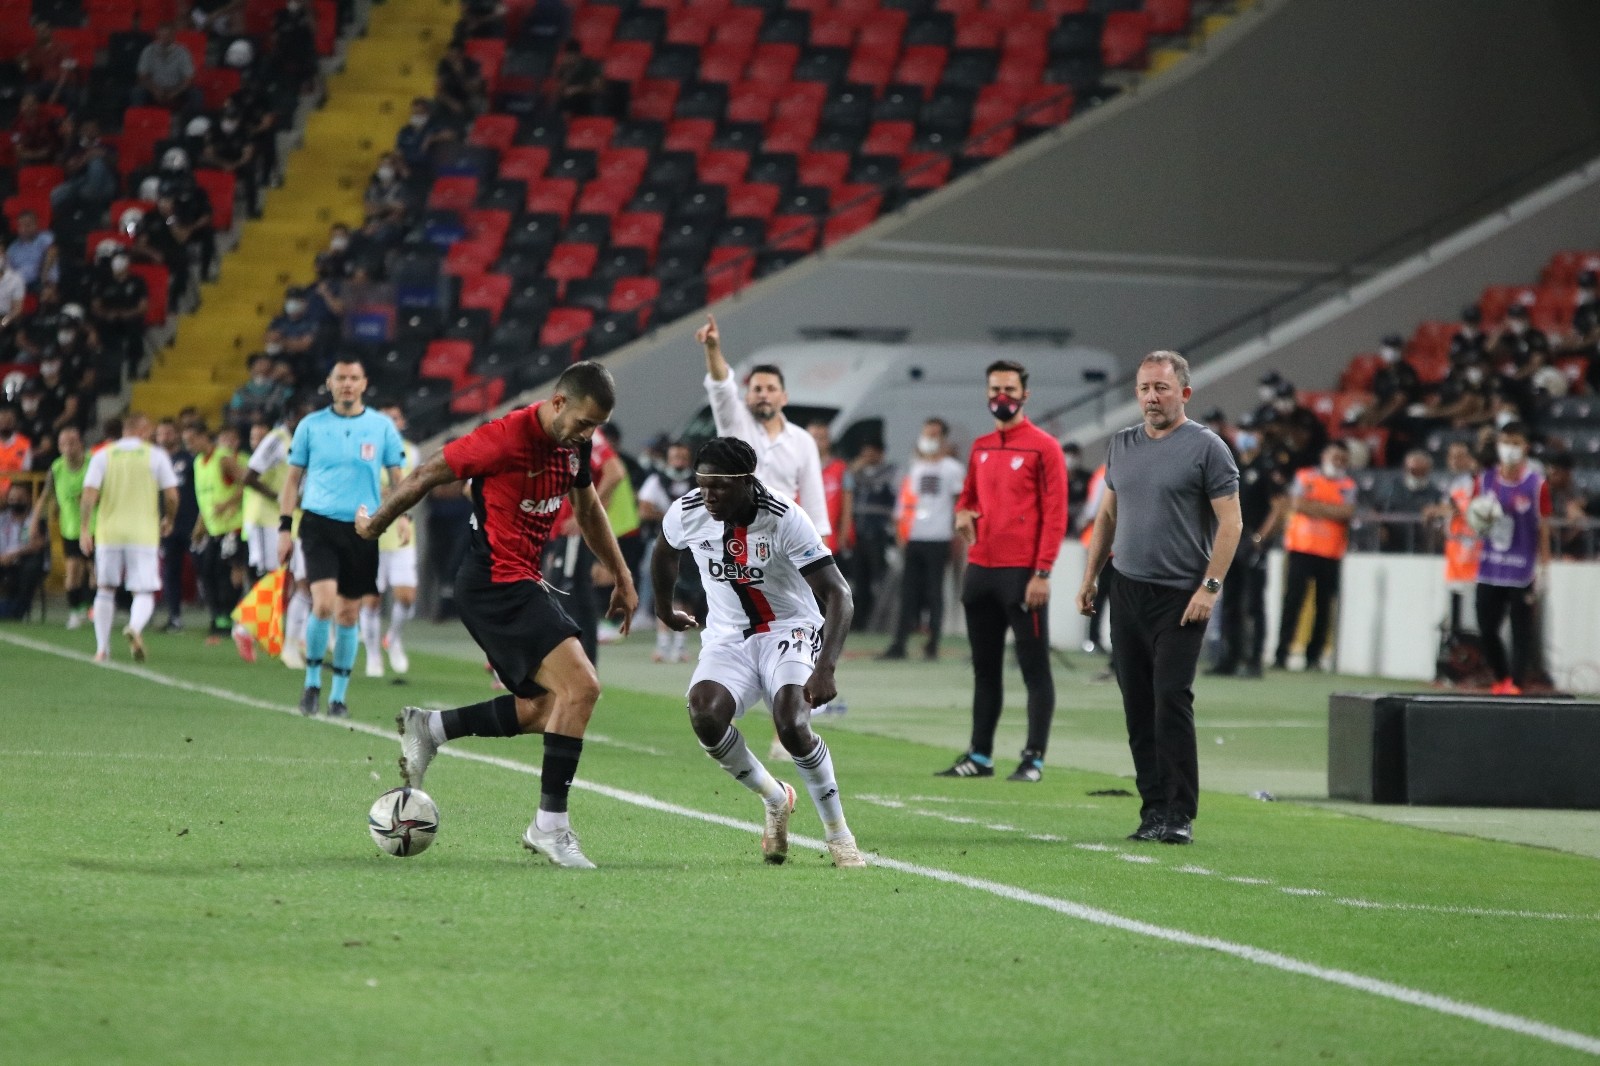 Süper Lig: Gaziantep FK: 0 - Beşiktaş: 0 (Maç sonucu) - Gaziantep Haberleri